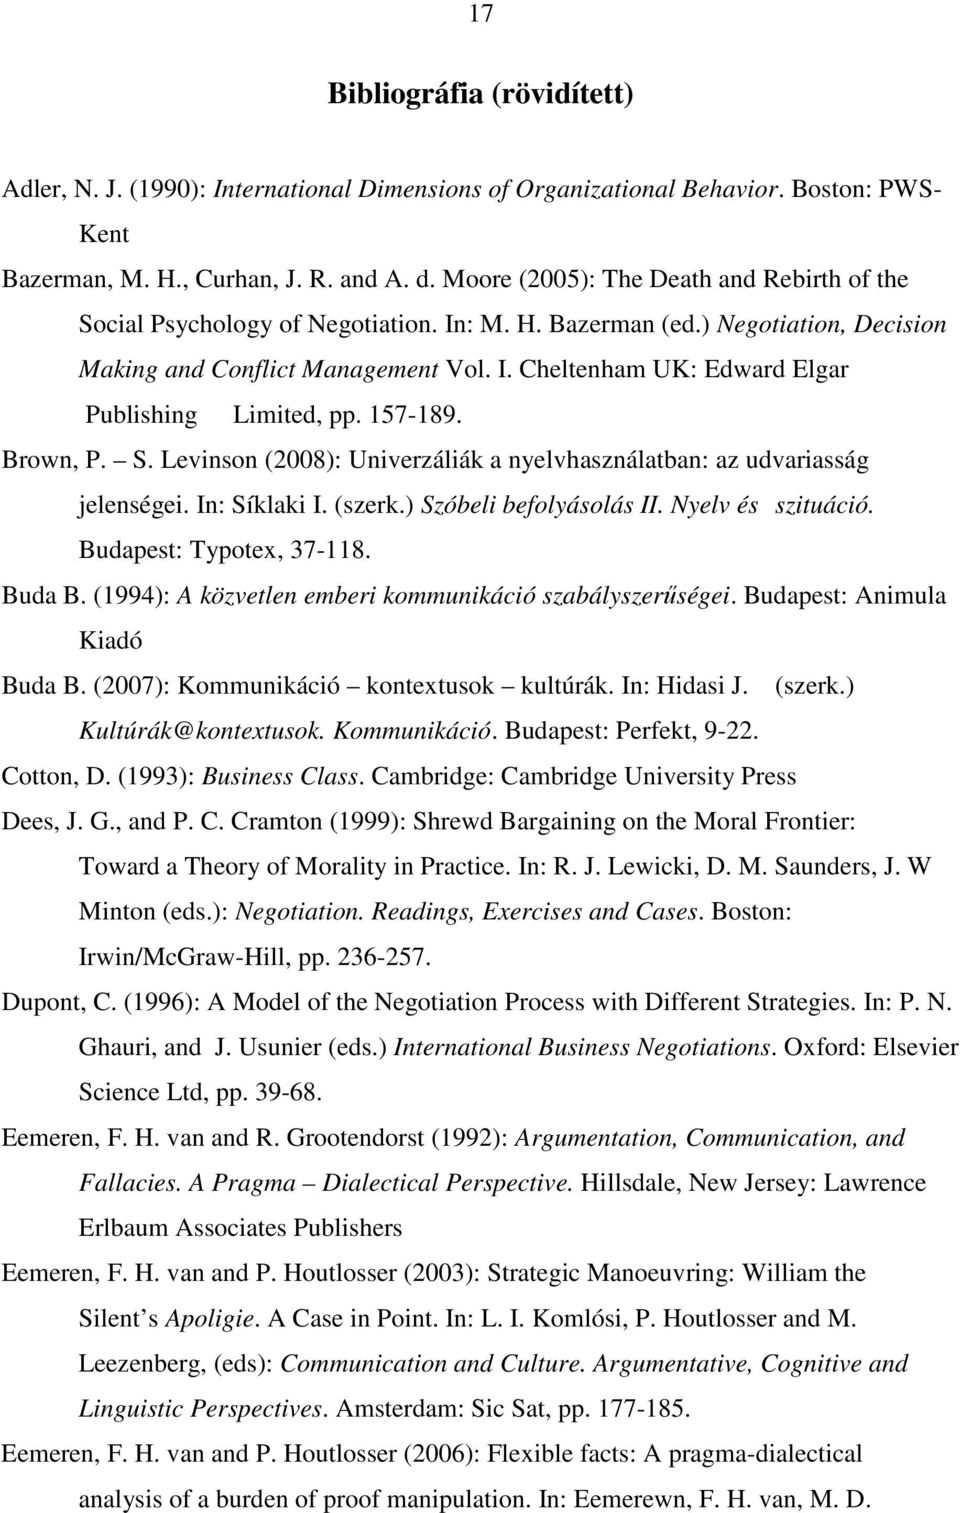 157-189. Brown, P. S. Levinson (2008): Univerzáliák a nyelvhasználatban: az udvariasság jelenségei. In: Síklaki I. (szerk.) Szóbeli befolyásolás II. Nyelv és szituáció. Budapest: Typotex, 37-118.